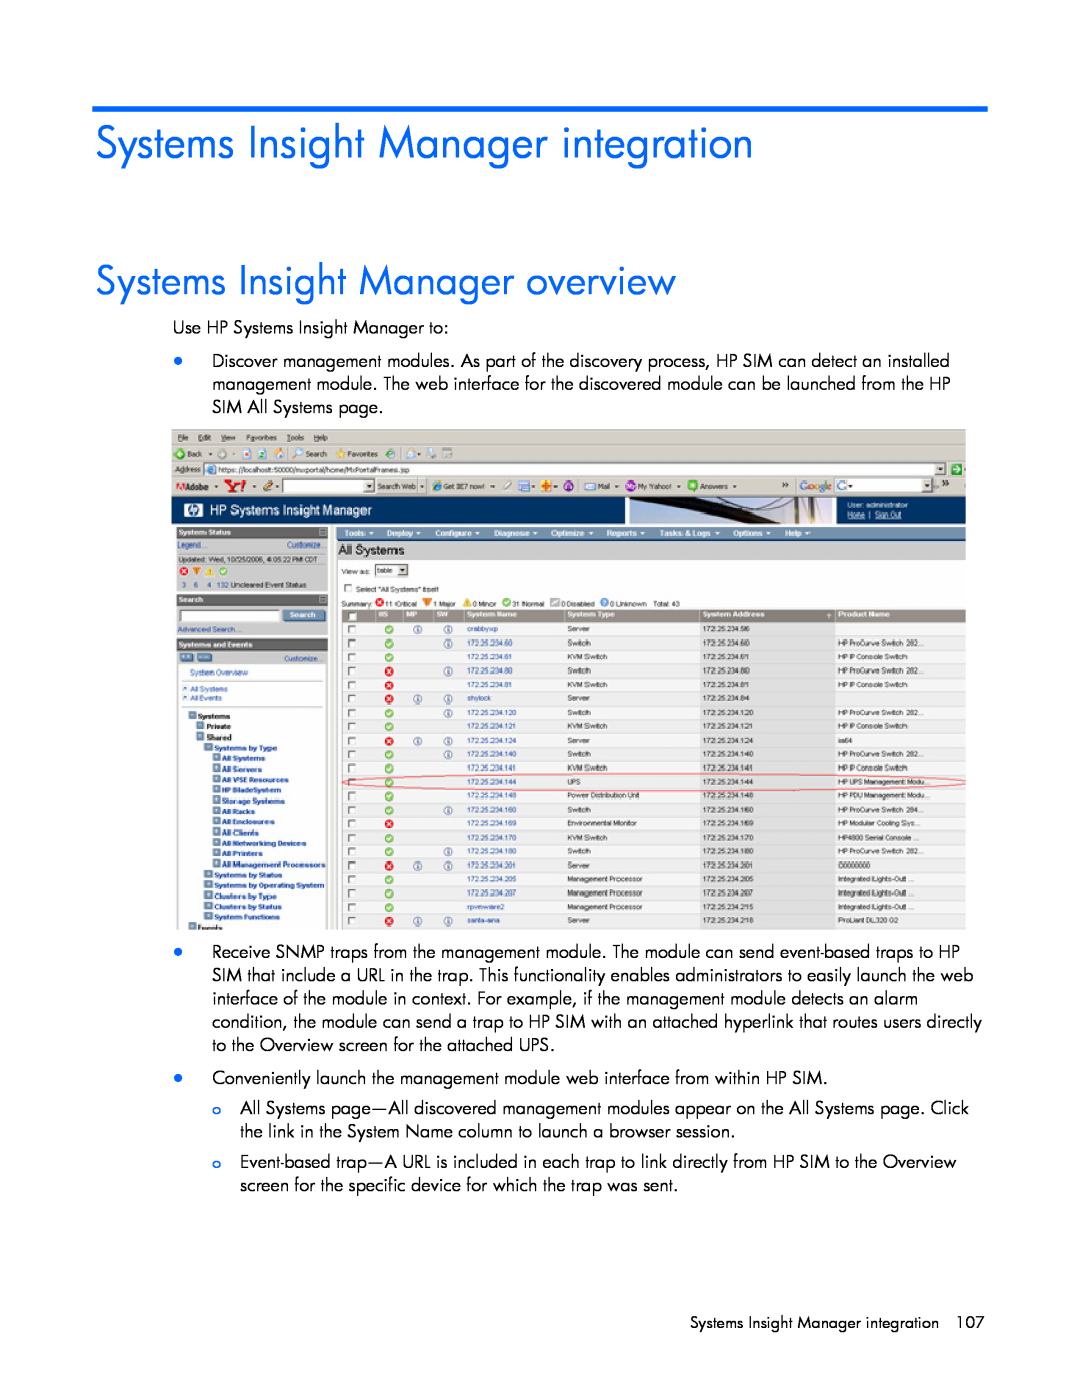 HP A1353A, A6584A, A1354A, A1356A, J4373A, J4370A, J4367A Systems Insight Manager integration, Systems Insight Manager overview 